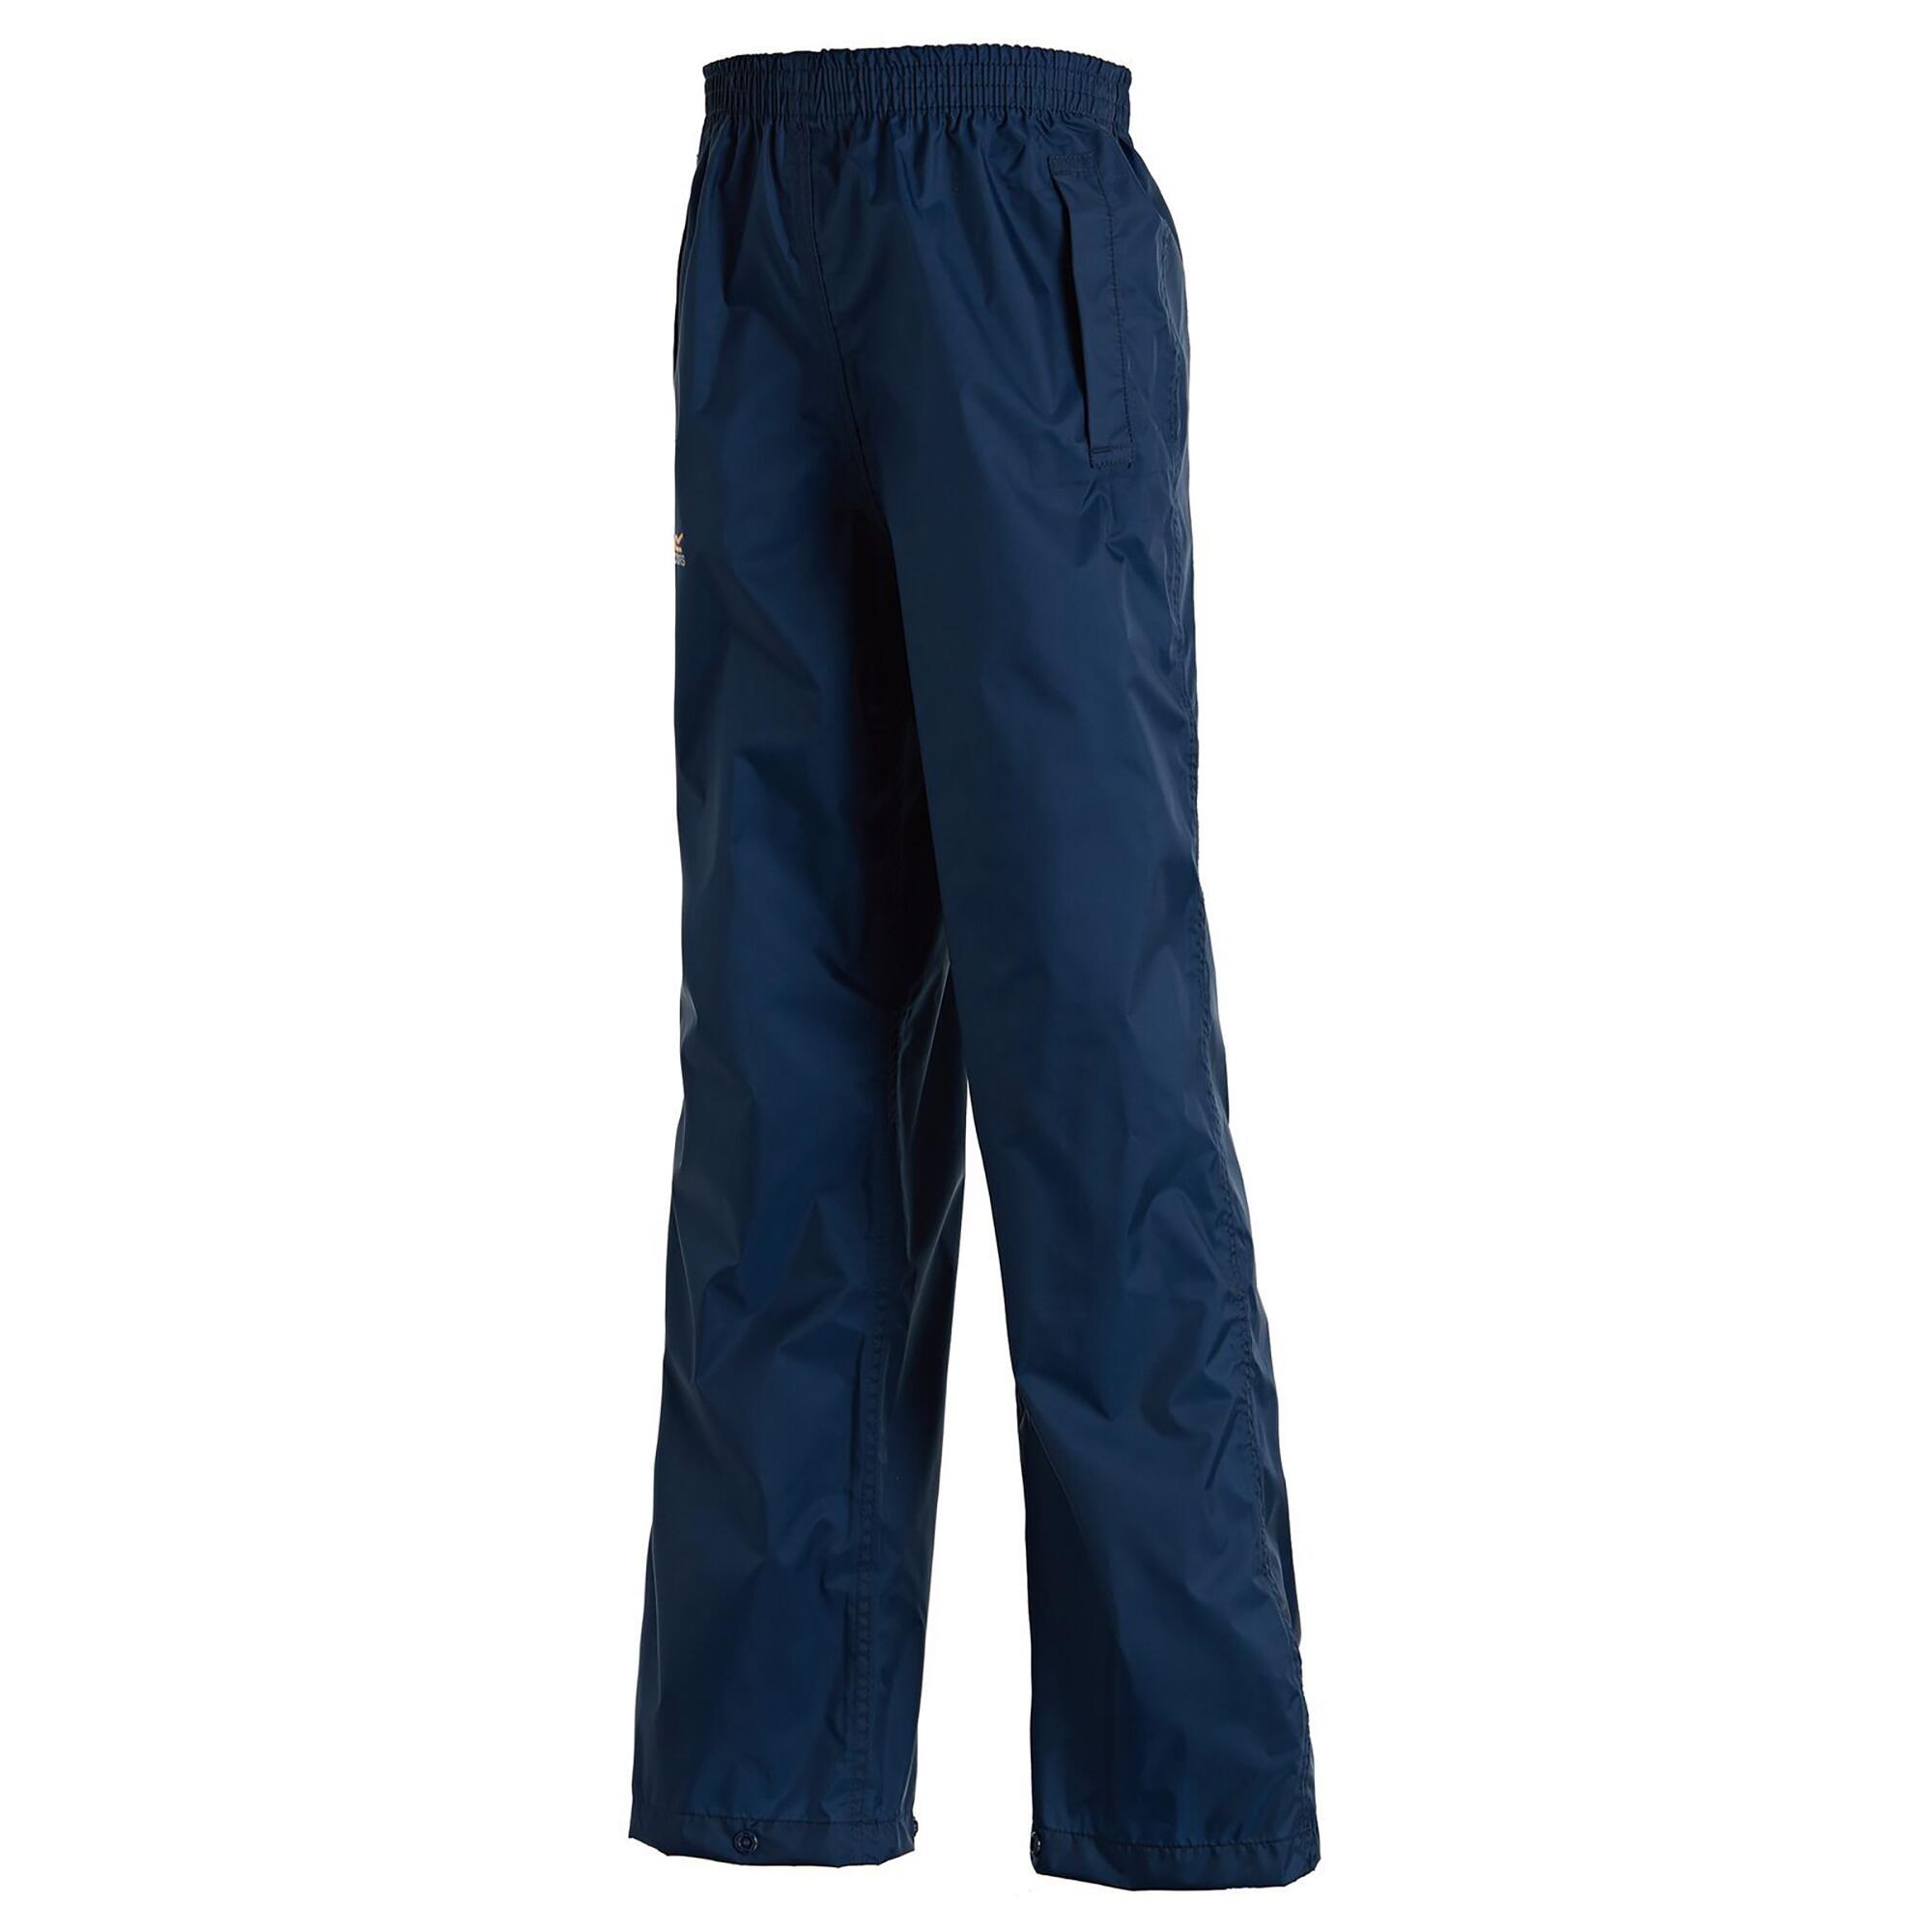 Childrens/Kids Packaway Rain Trousers (Navy) 3/4